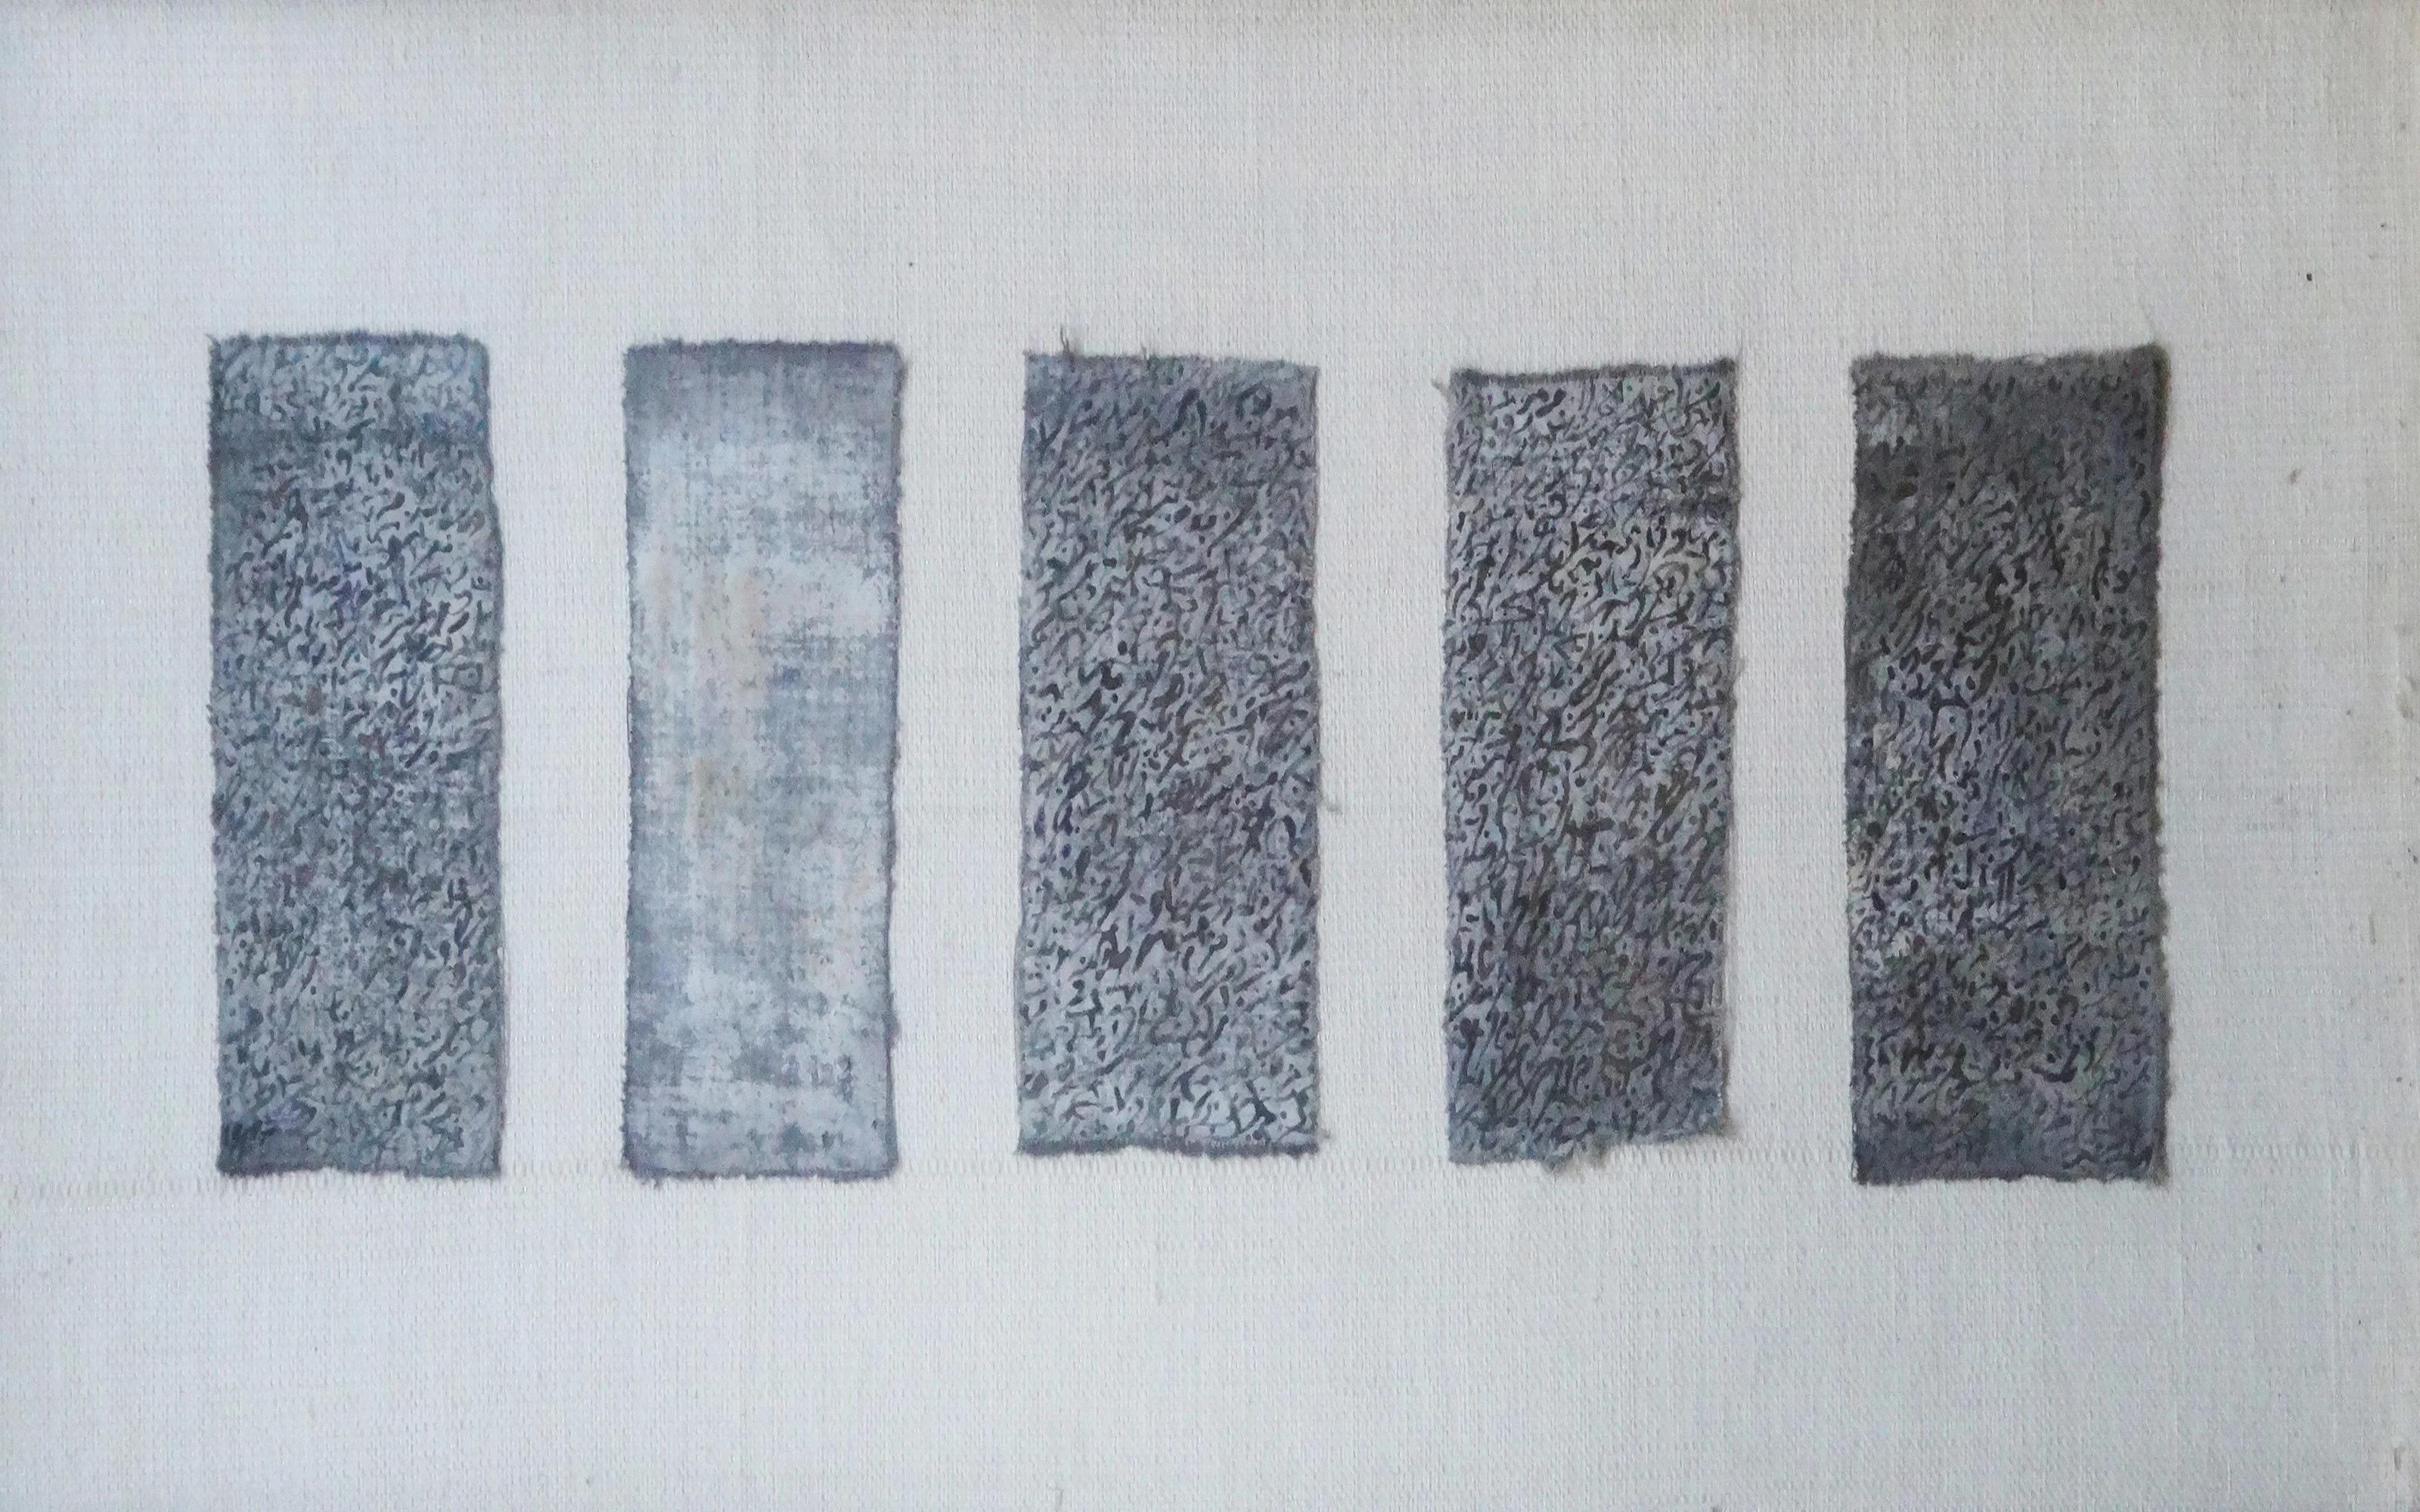 Peinture à l'encre sur tissu "Abstract Script" 10" x 2"4 inch par Mohamed Monaiseer

Série Trinity (2015)

Dans ce travail, je développe une philosophie personnelle de la trinité - l'union de trois en un. La trinité se compose de l'énergie, de la